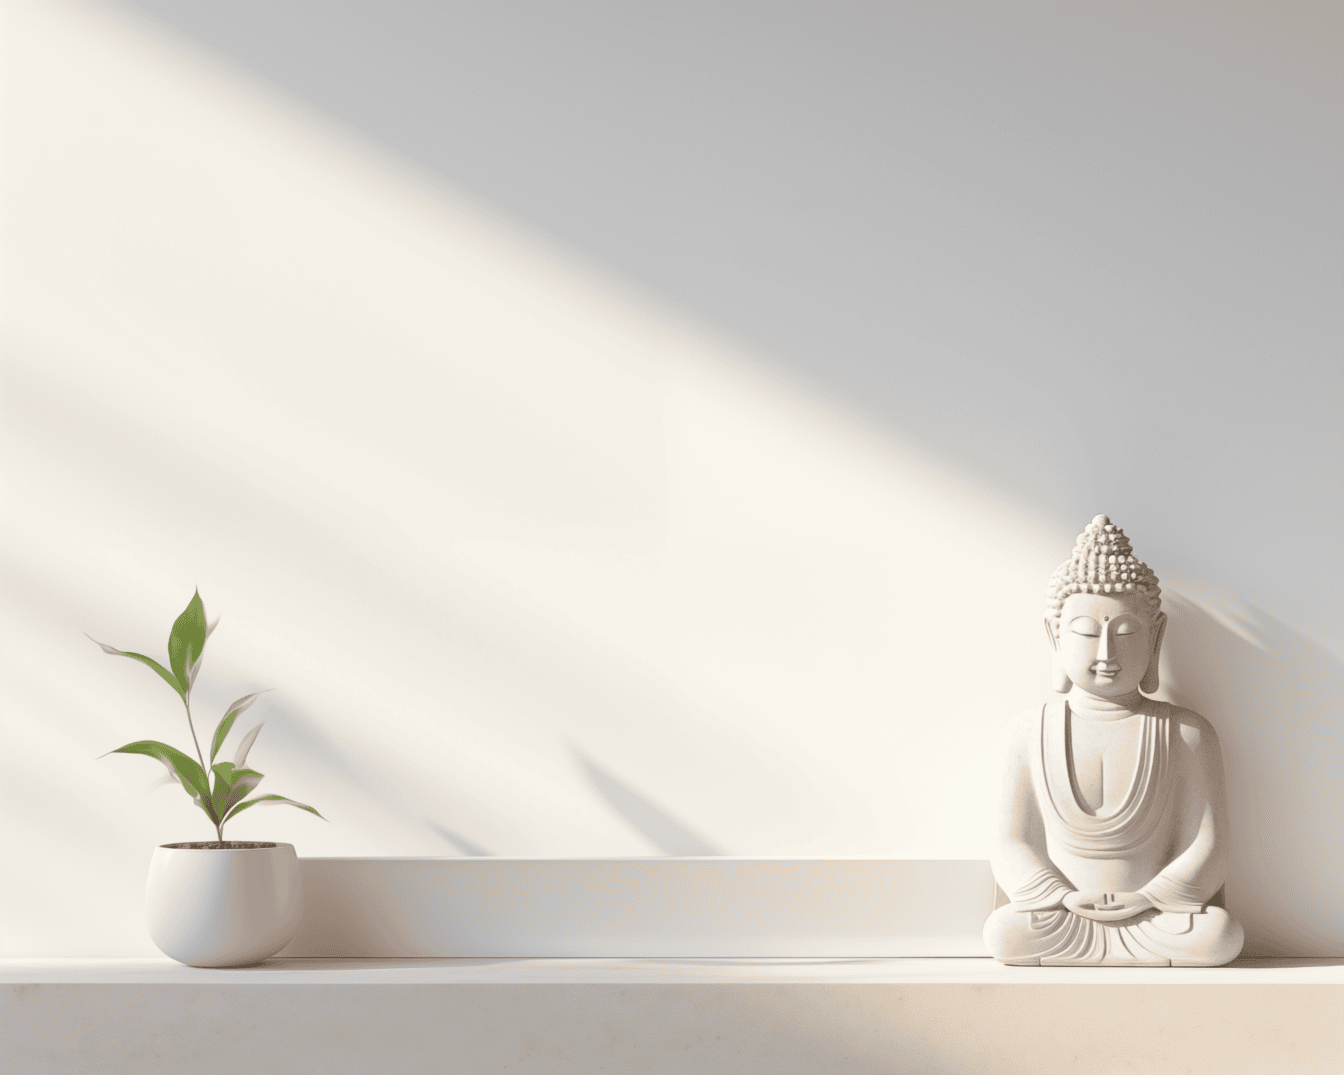 Estatueta branca de um buda meditando em uma posição de lótus na prateleira na parede branca sob sombra suave